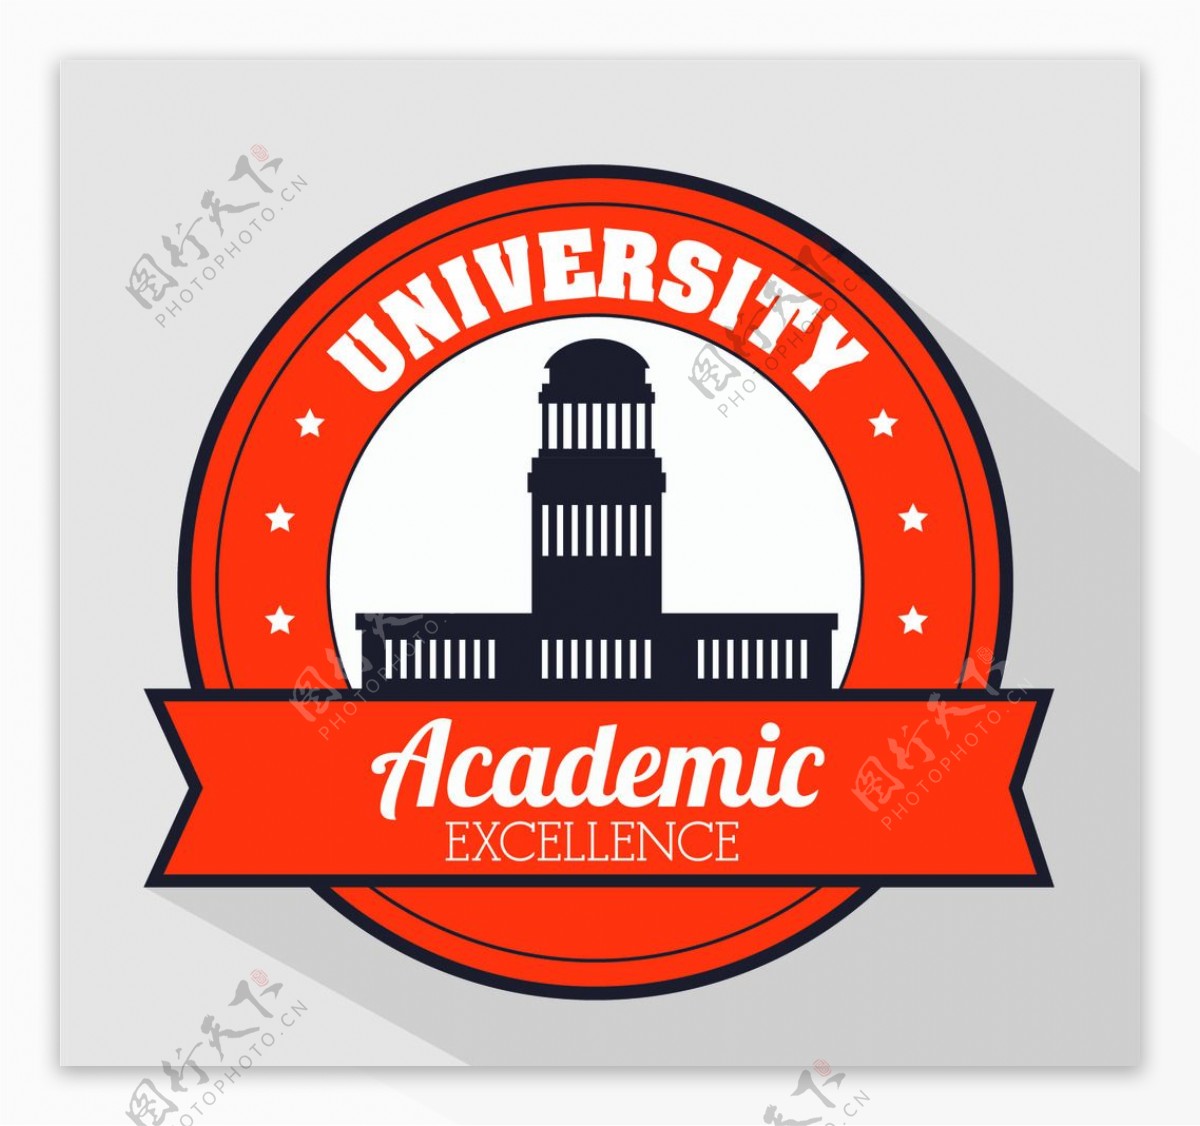 圆形橙色大学logo矢量